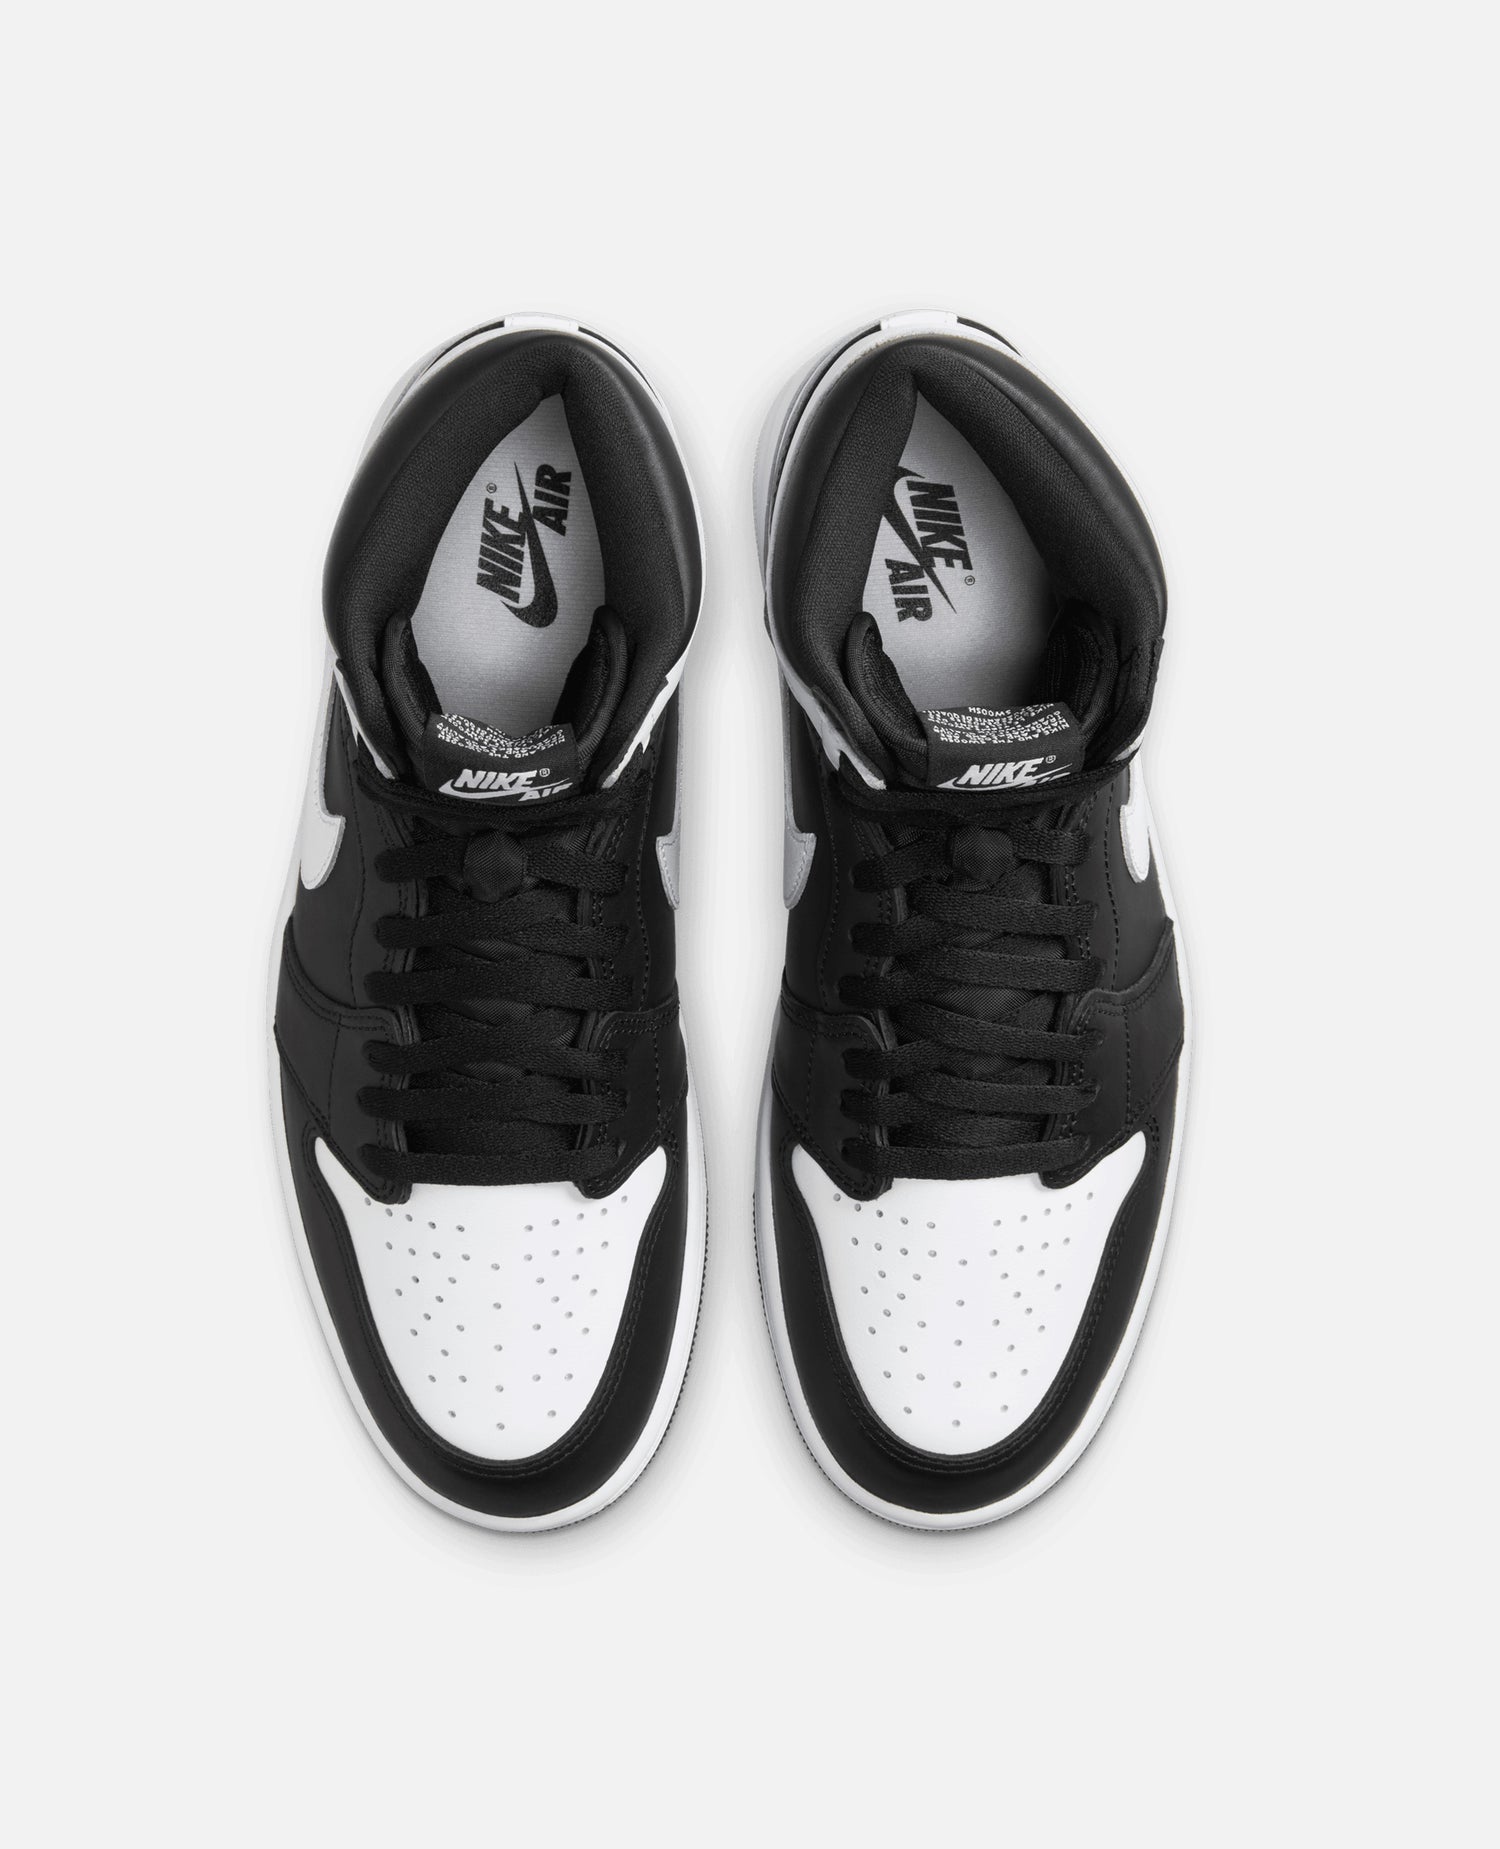 Nike Air Jordan 1 Retro High OG (Black/White-White)